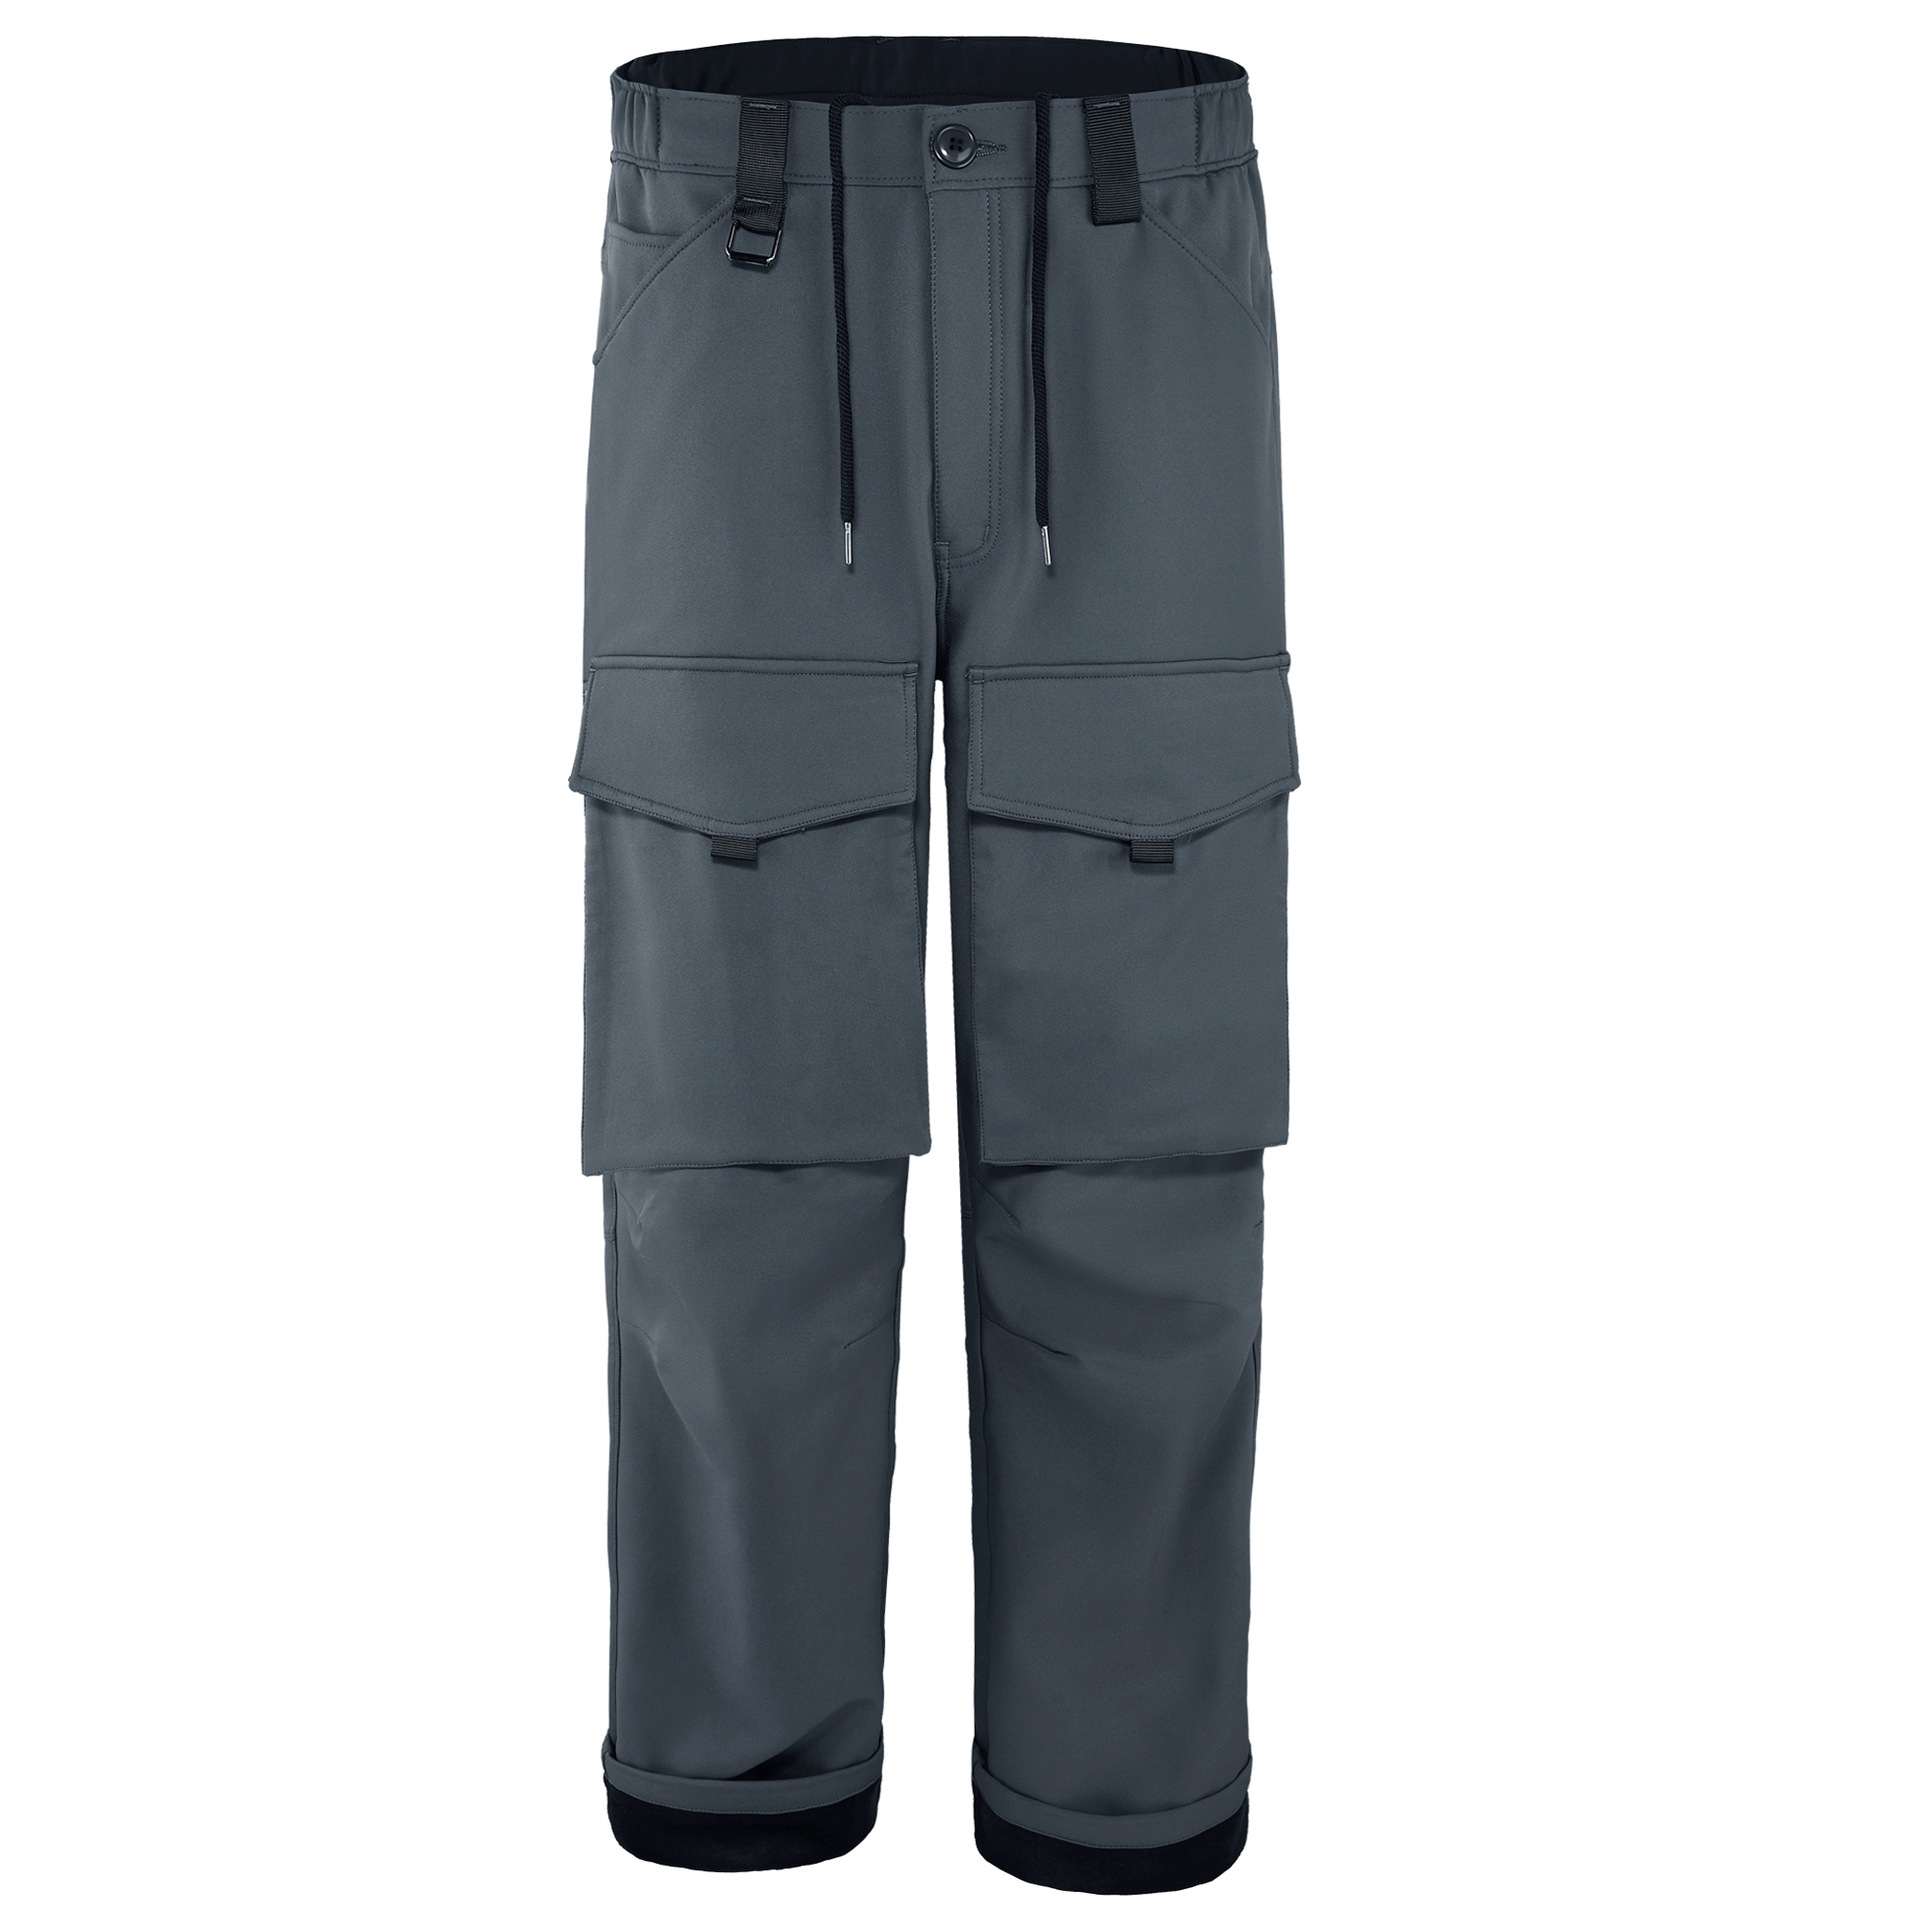 Men's Rain Pants Waterproof Over Pants For Outdoor Hiking Fishing